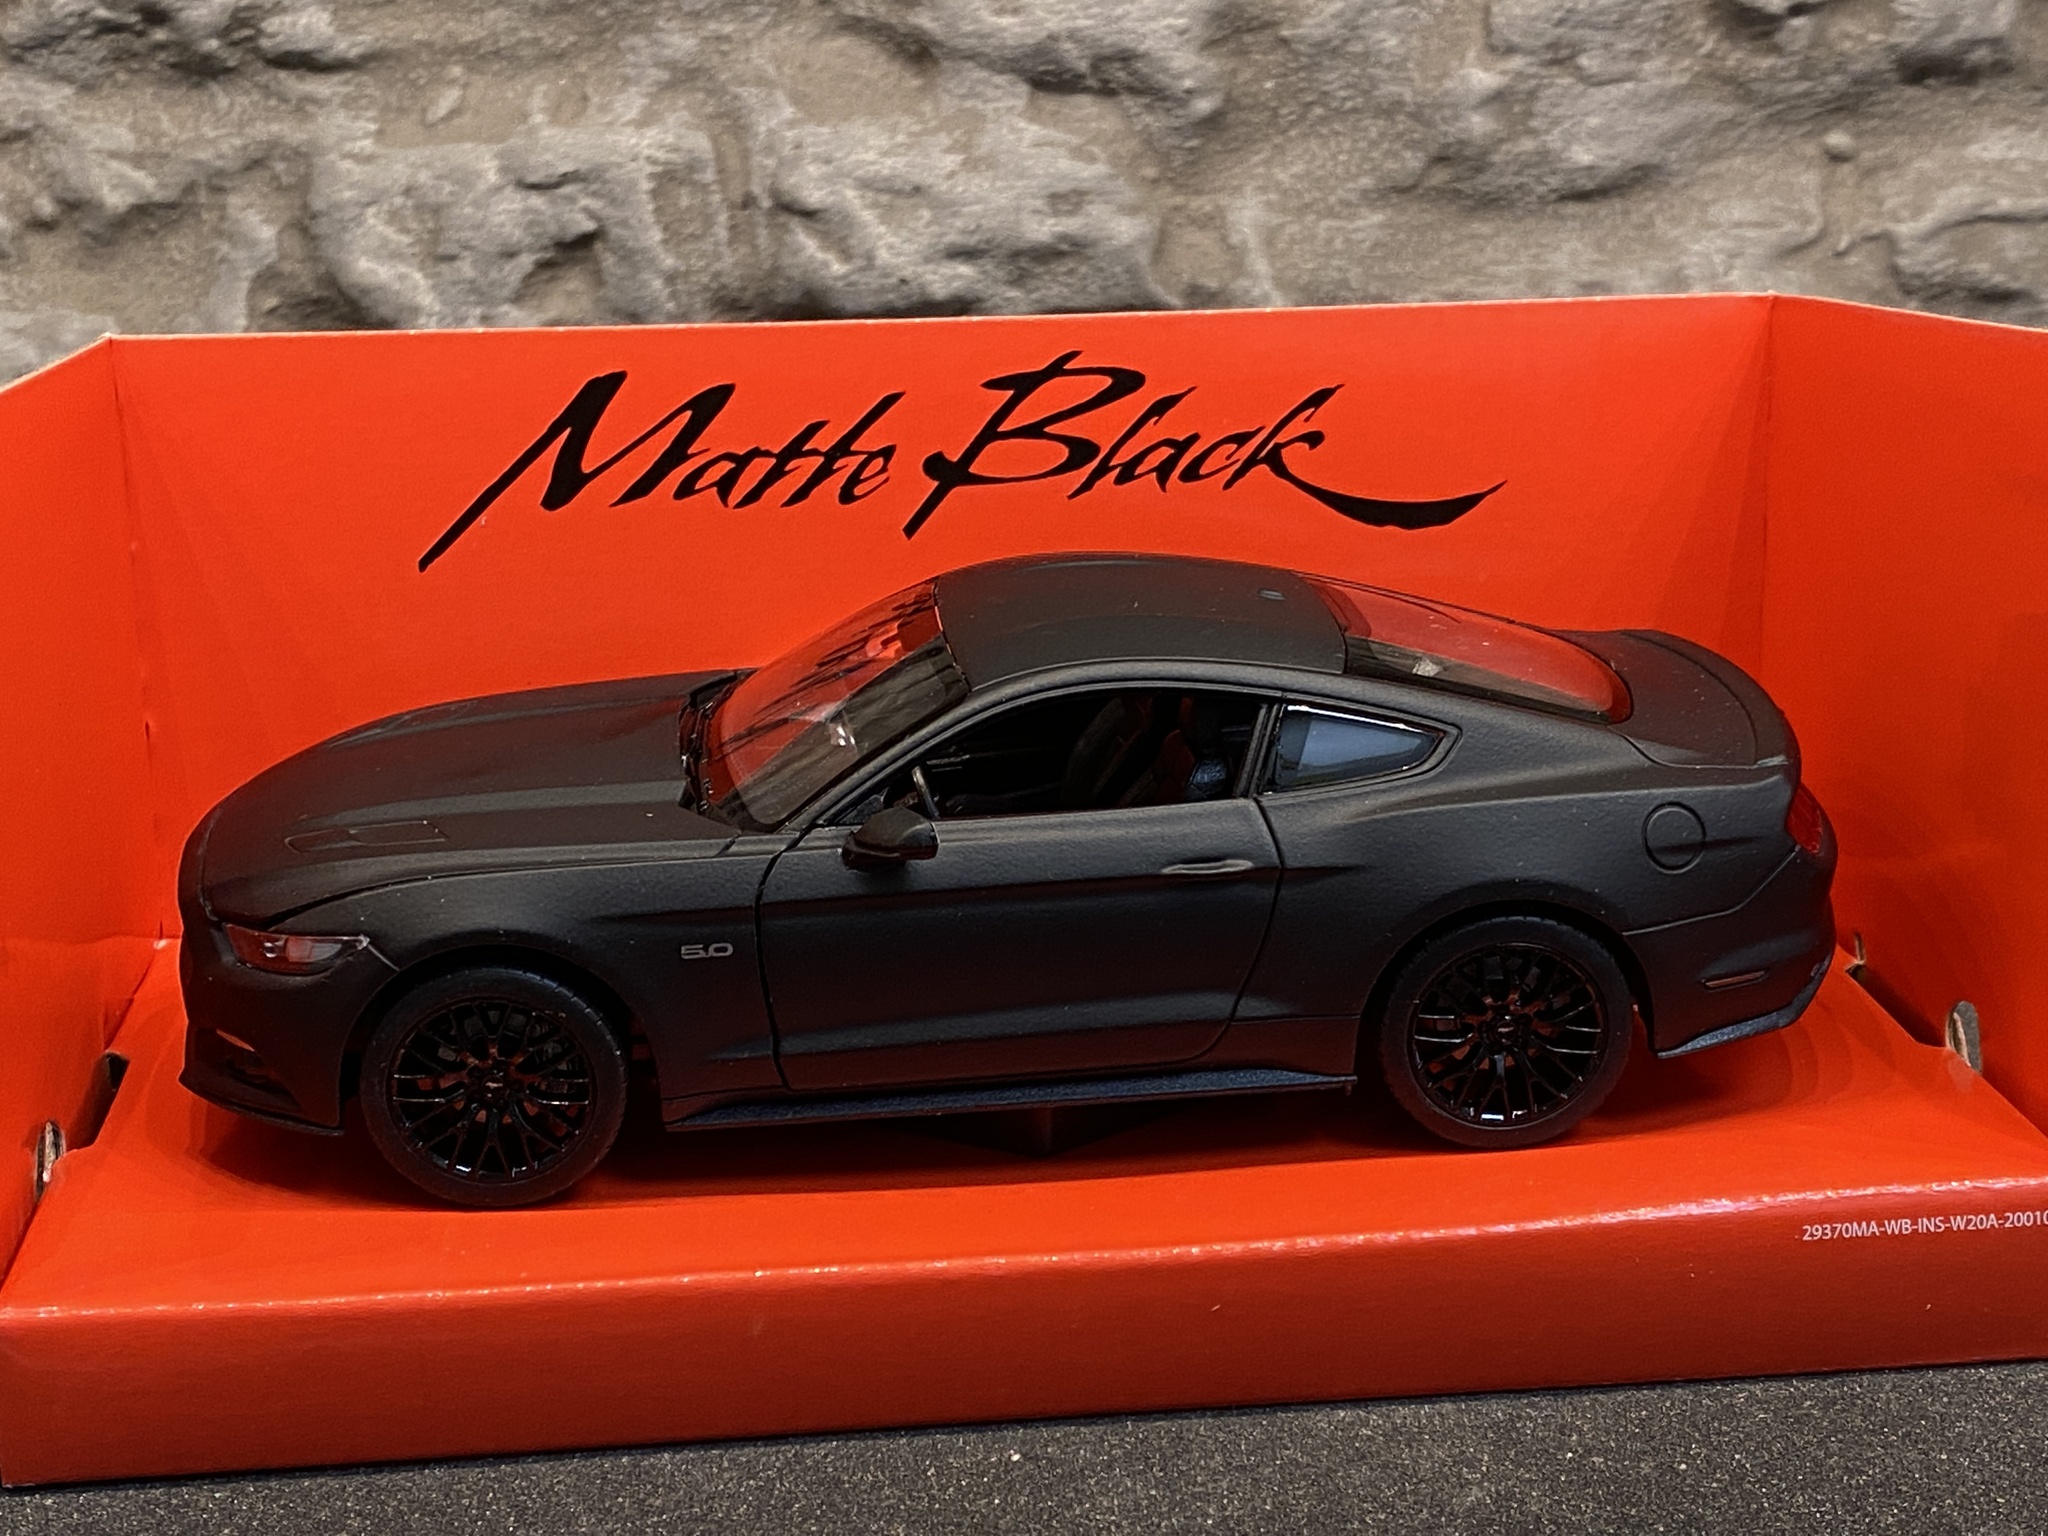 Skala 1/24: Ford Mustang GT 2015' "Matte Black" fr Welly Nex Models